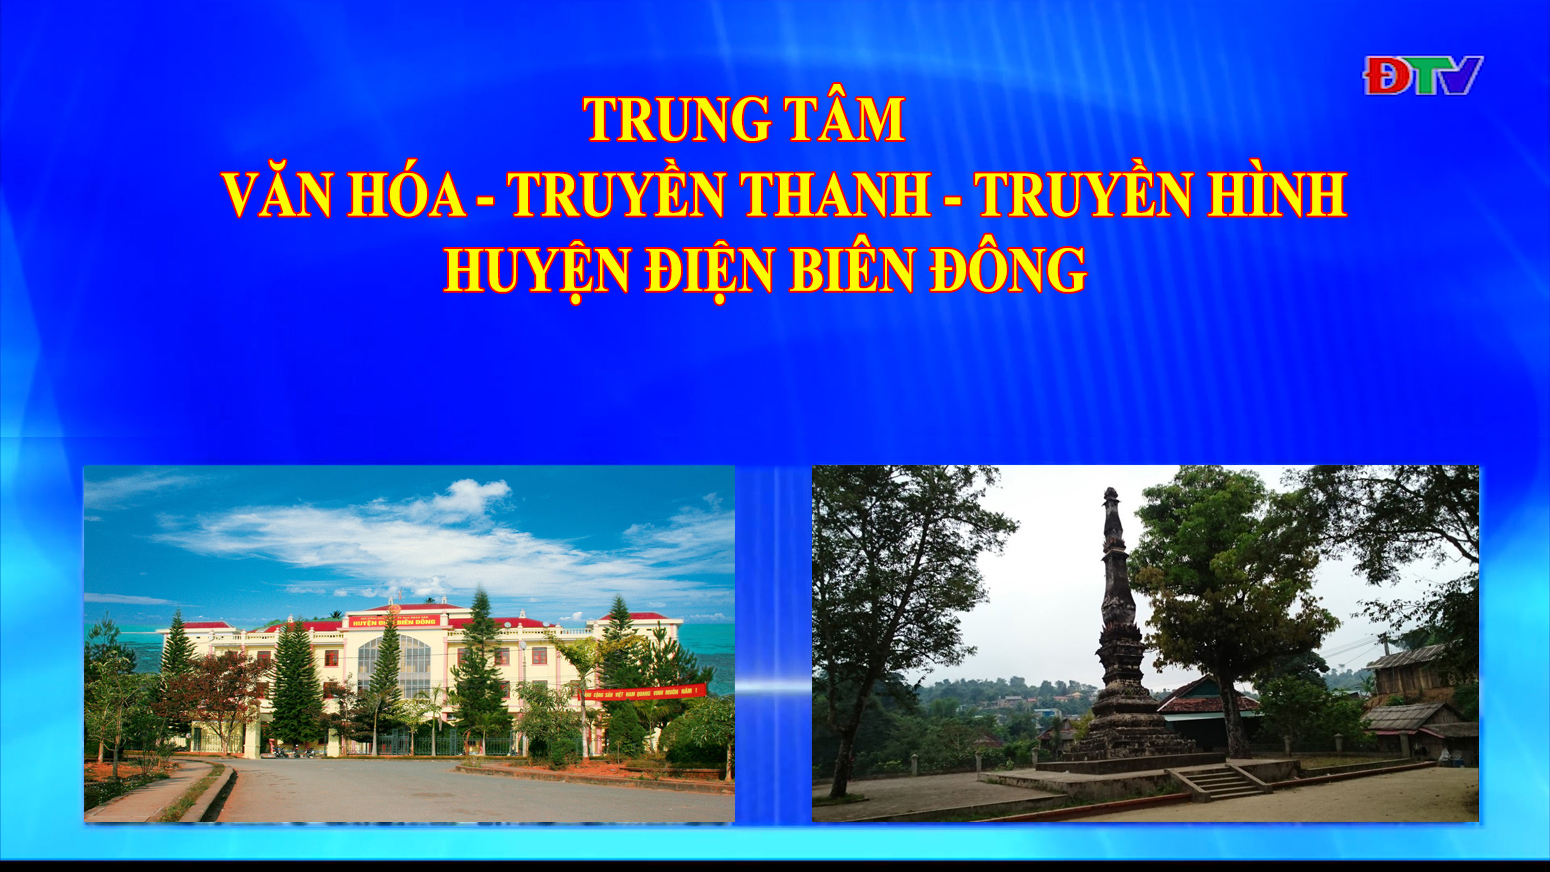 Trung tâm VH-TTTH huyện Điện Biên Đông (Ngày 13-11-2021)